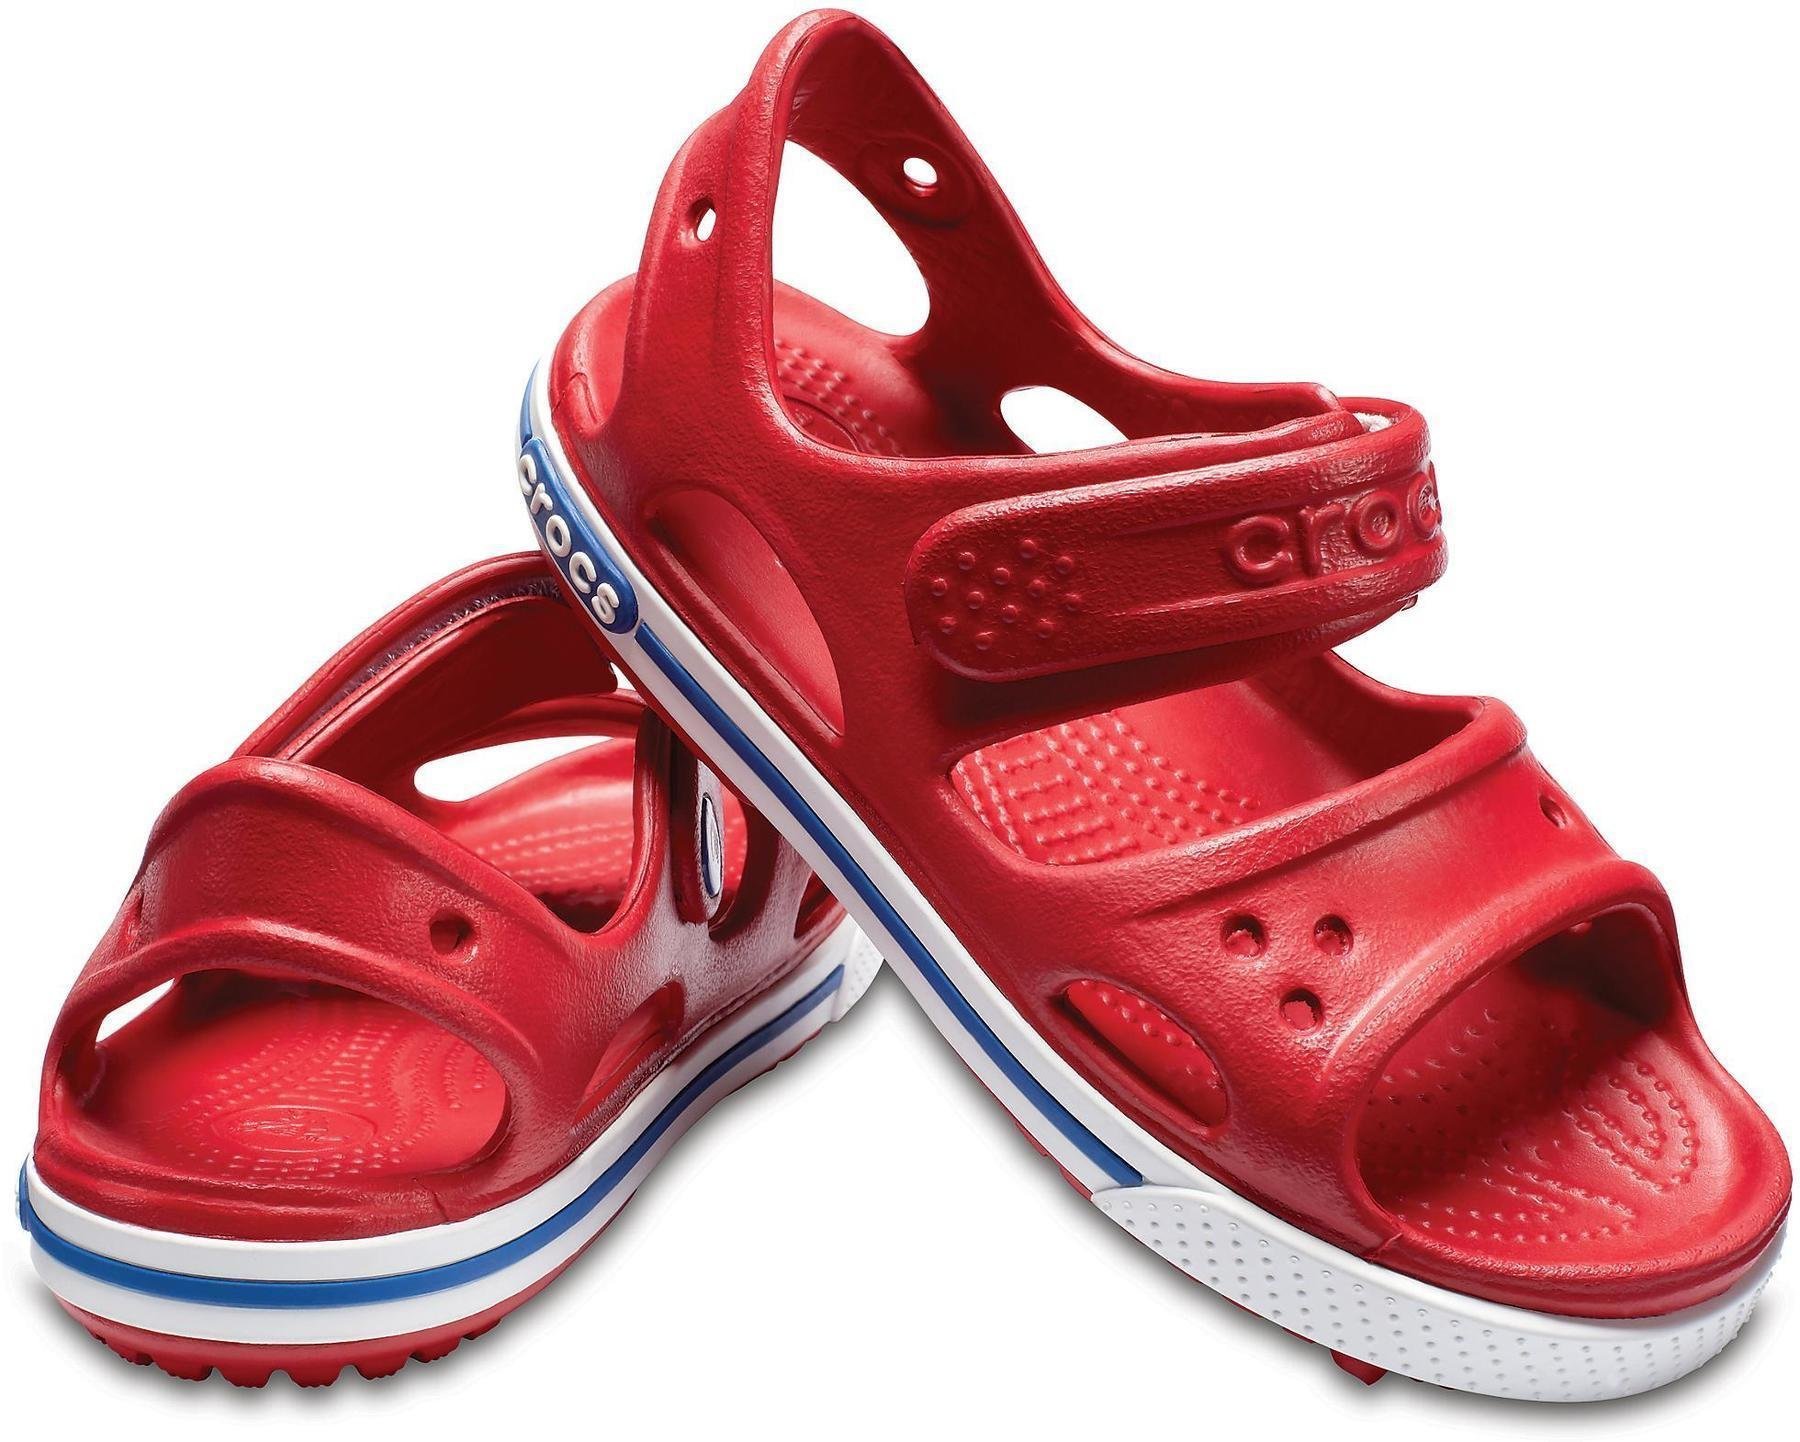 Otroški čevlji Crocs Preschool Crocband II Sandal Pepper/Blue Jean 20-21